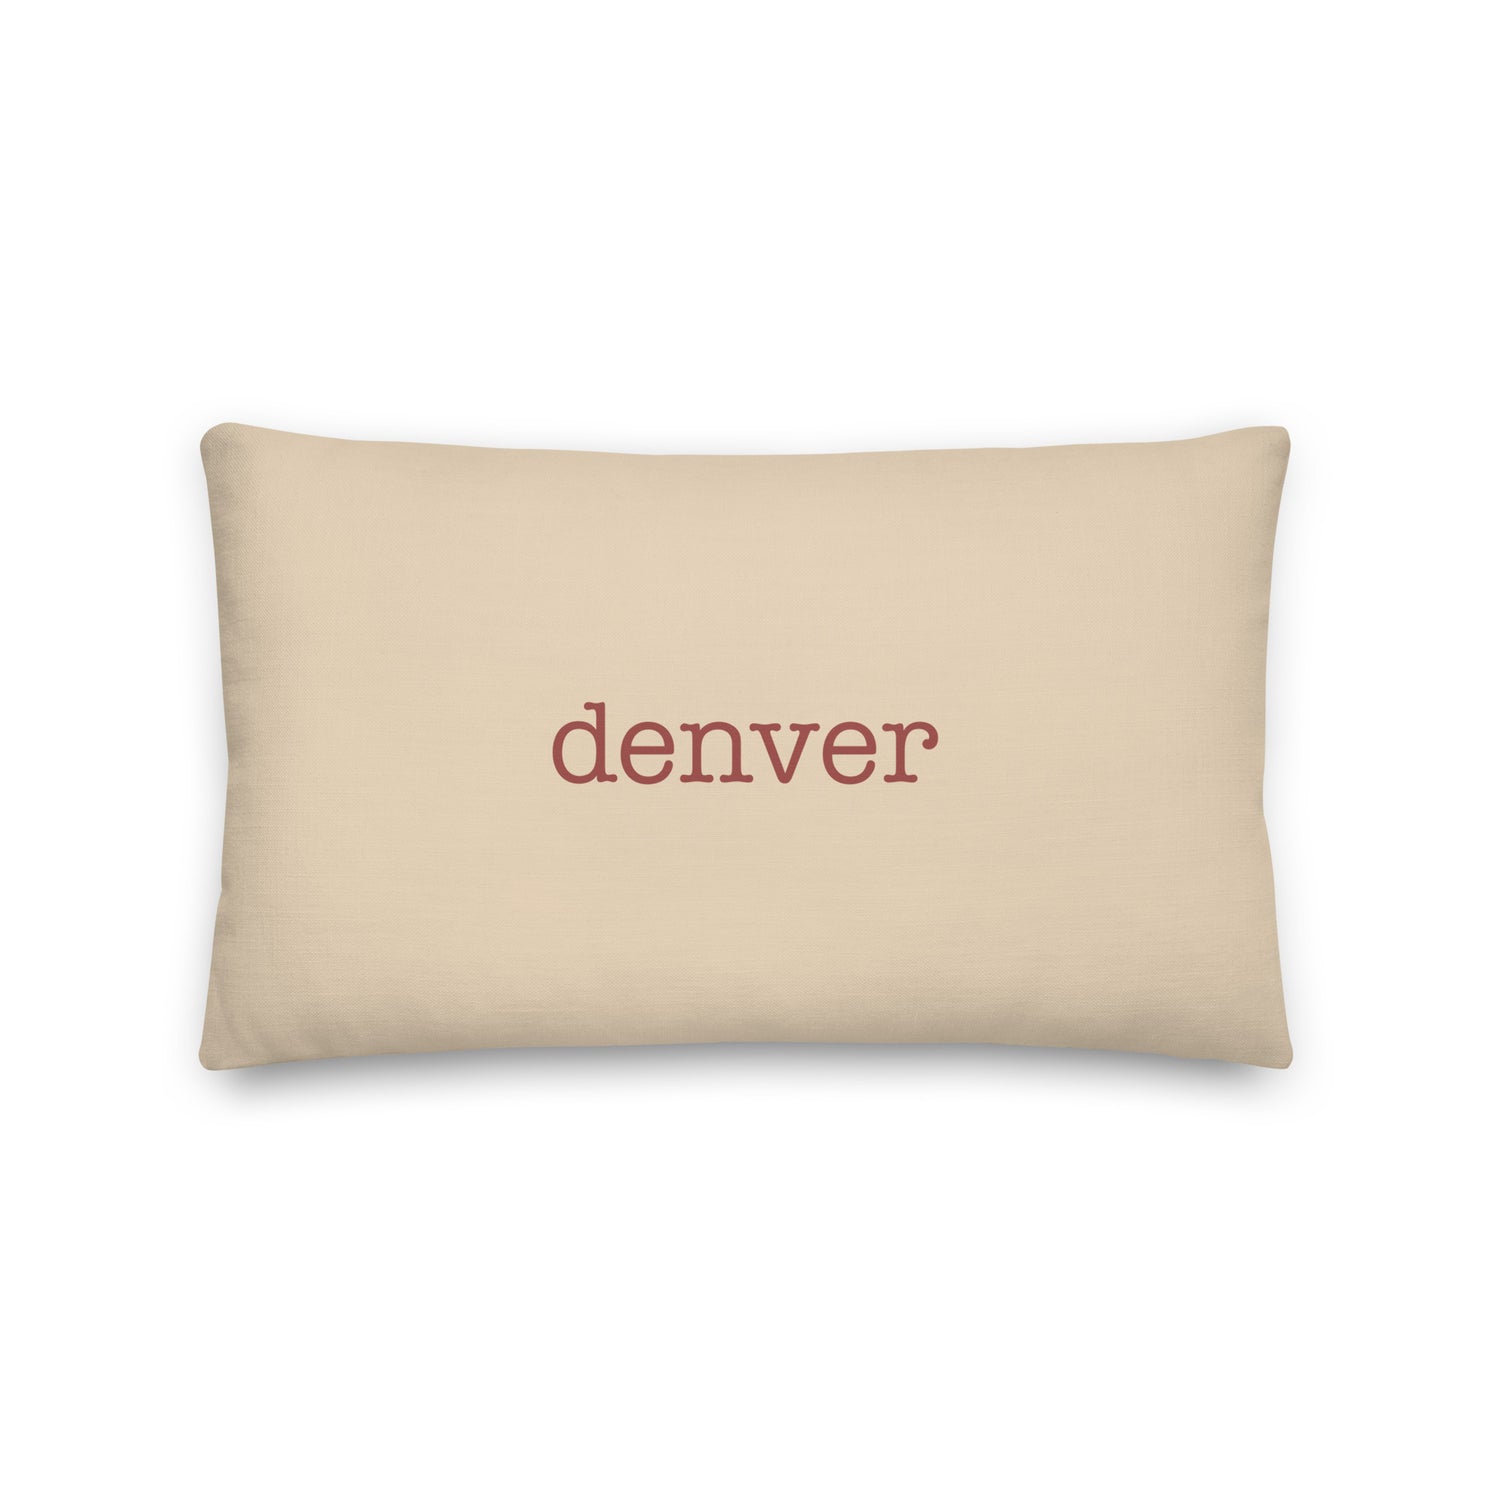 Denver Colorado Pillows and Blankets • DEN Airport Code